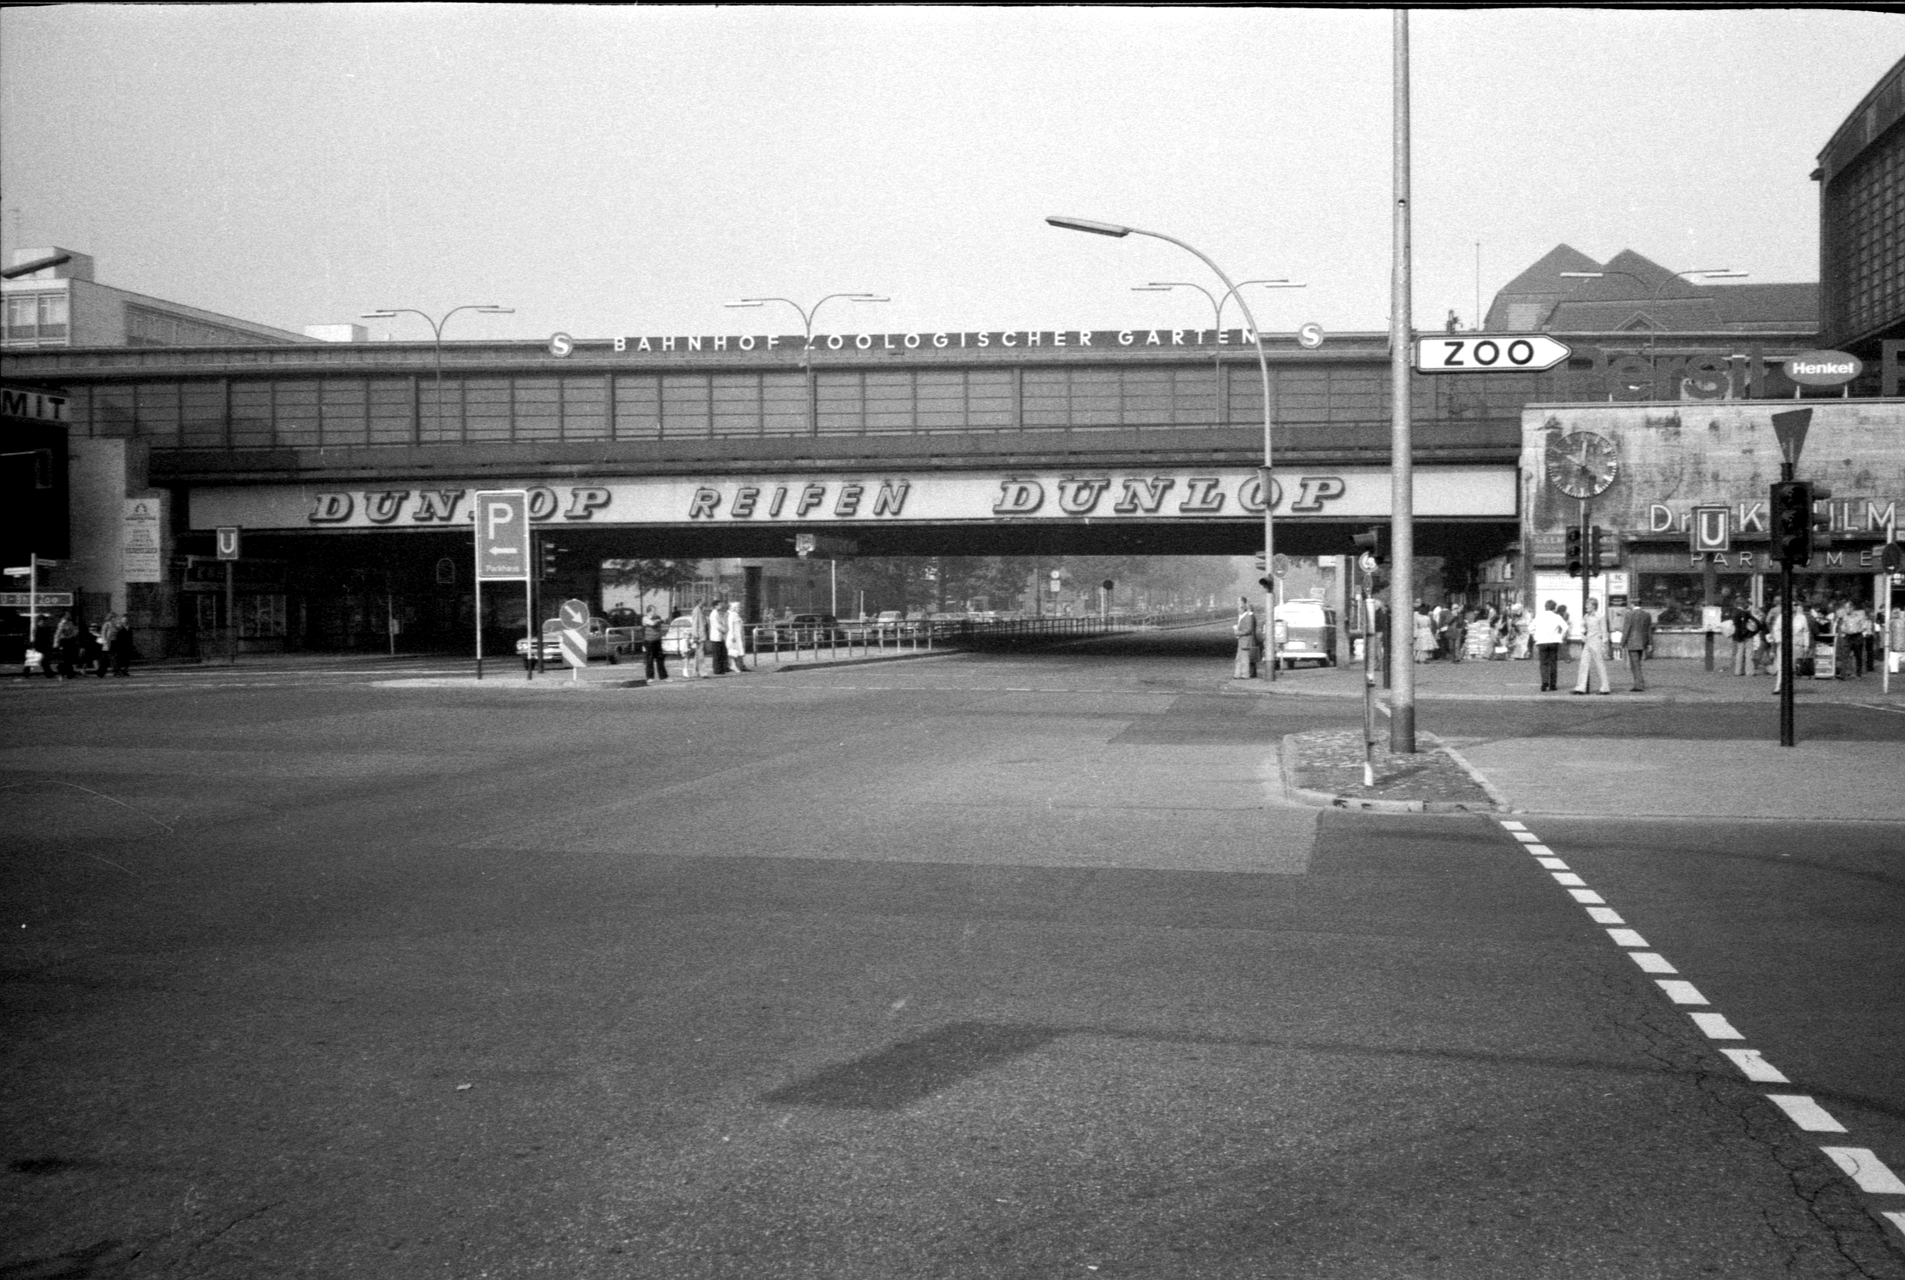 Bahnhof Zoologischer Garten, Berlin 1975